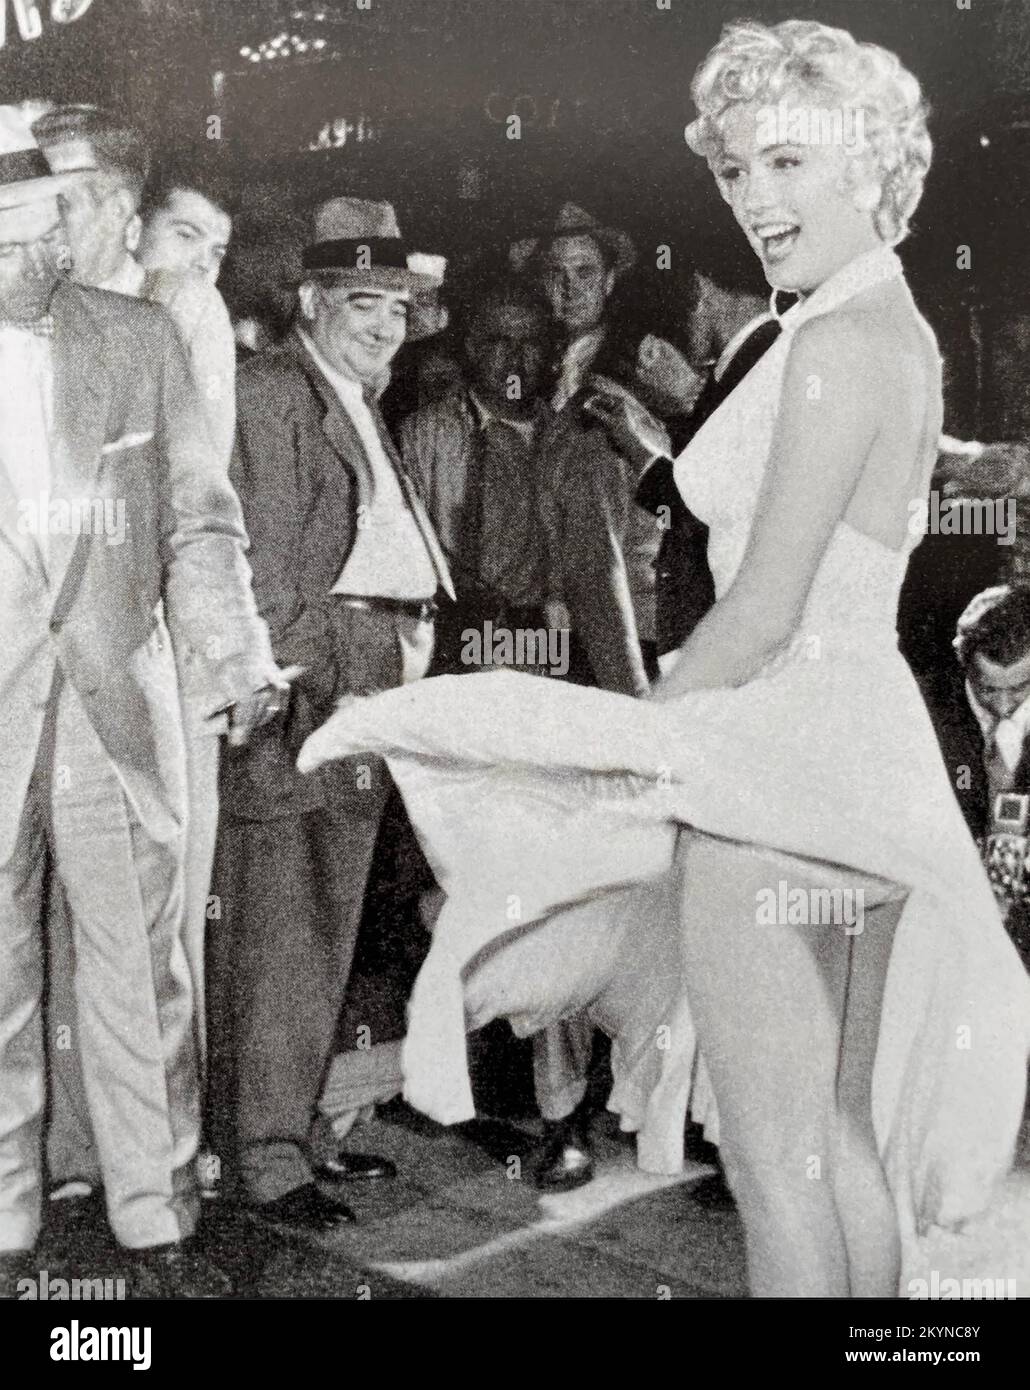 DER SIEBENJÄHRIGE JUCKREIZ-1955 20.-Century-Fox-Film mit Marilyn Monroe. Die berühmte Rock-Blassequenz zog viel Aufmerksamkeit auf sich. Stockfoto